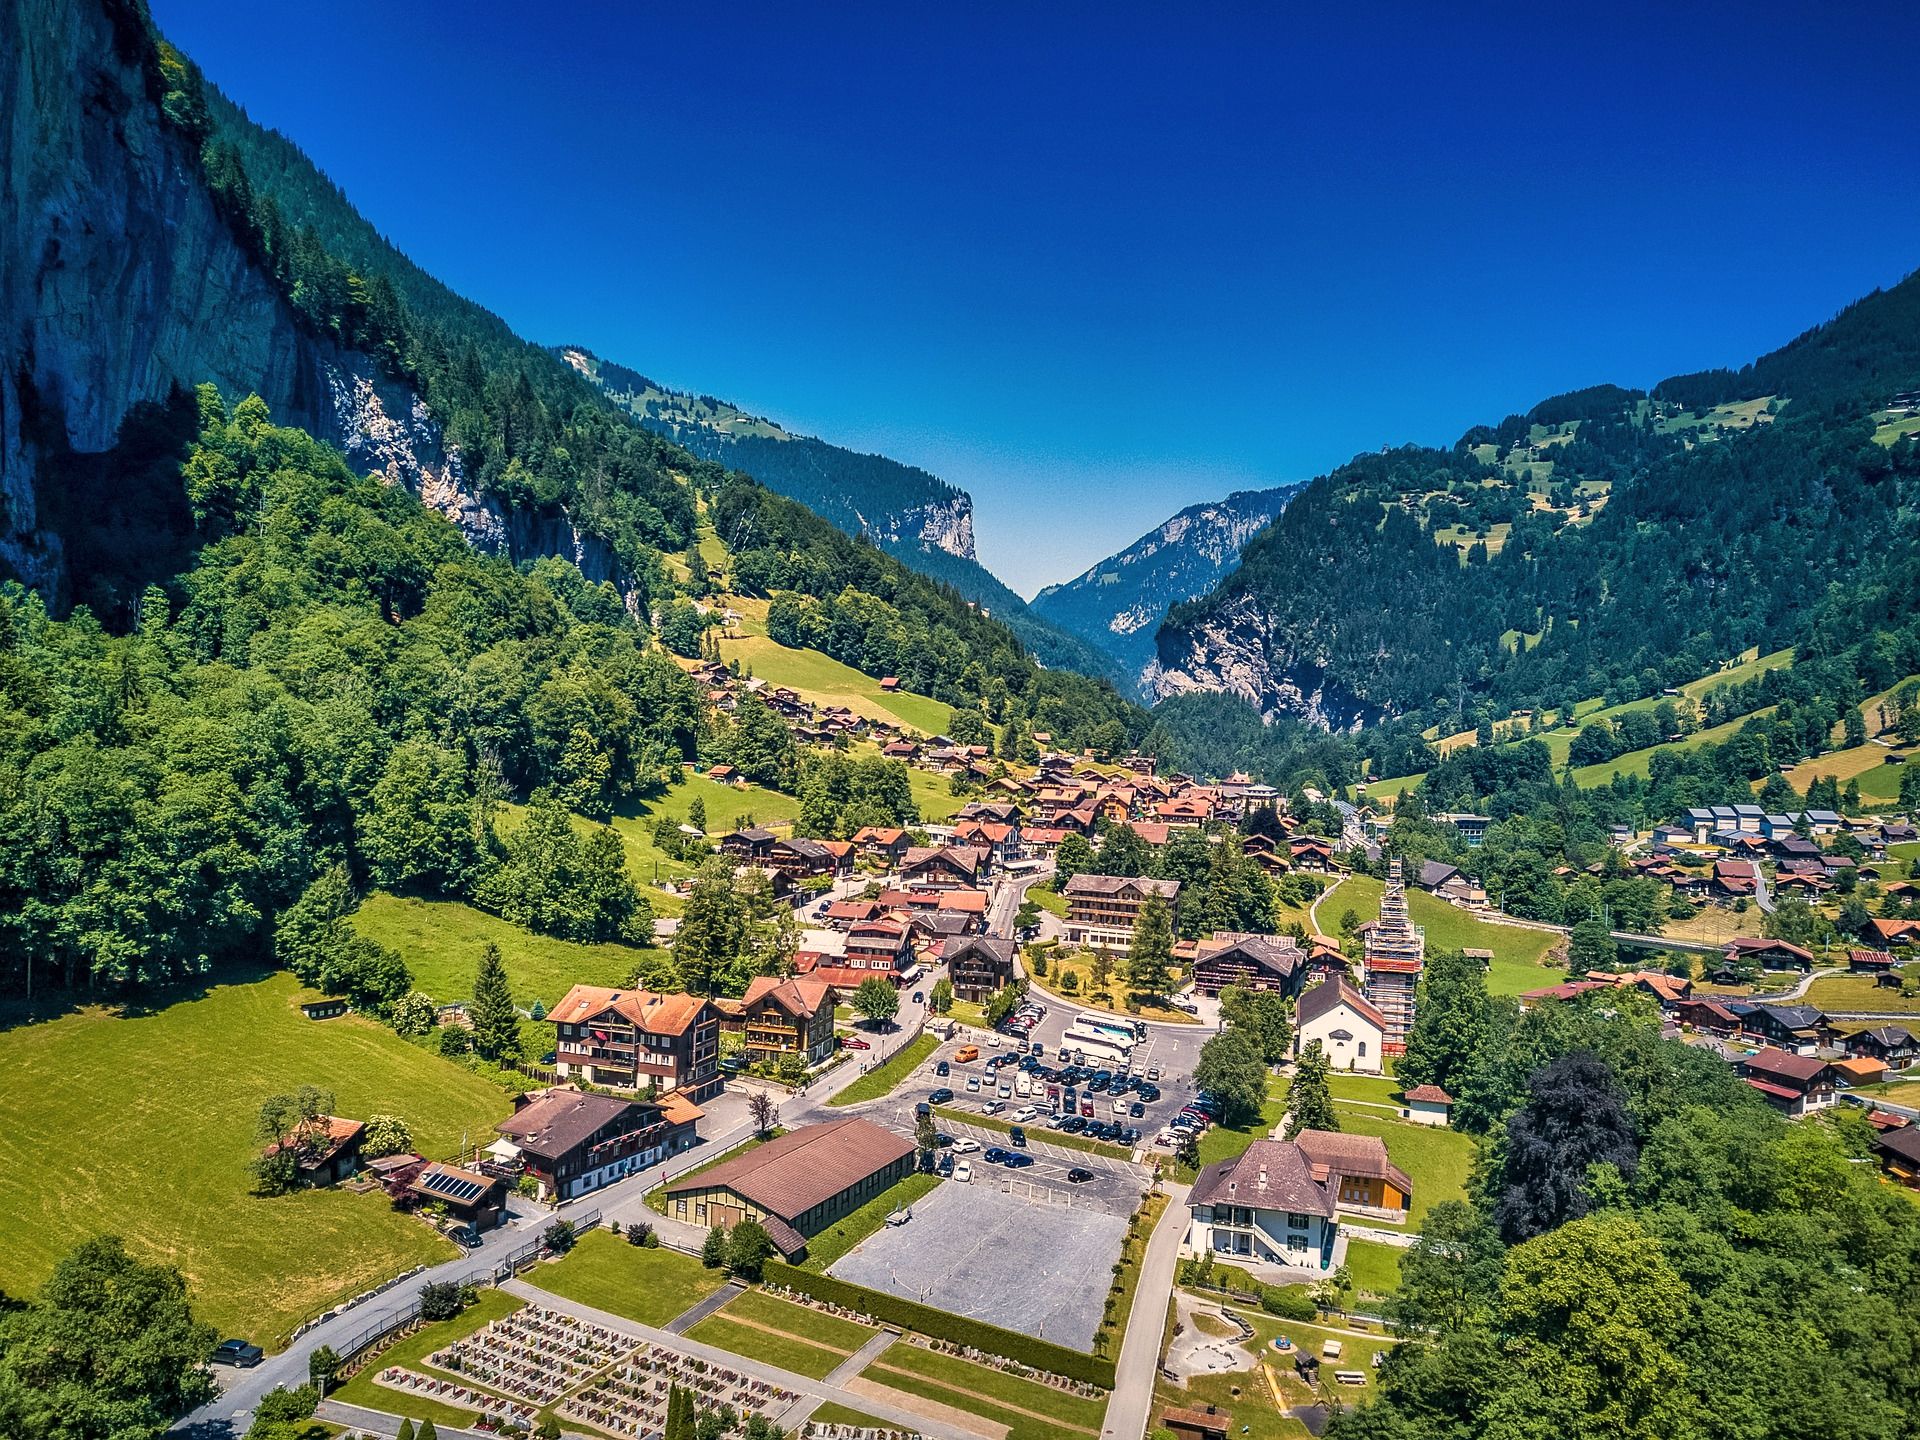 Lauterbrunnen in Switzerland is fighting overtourism